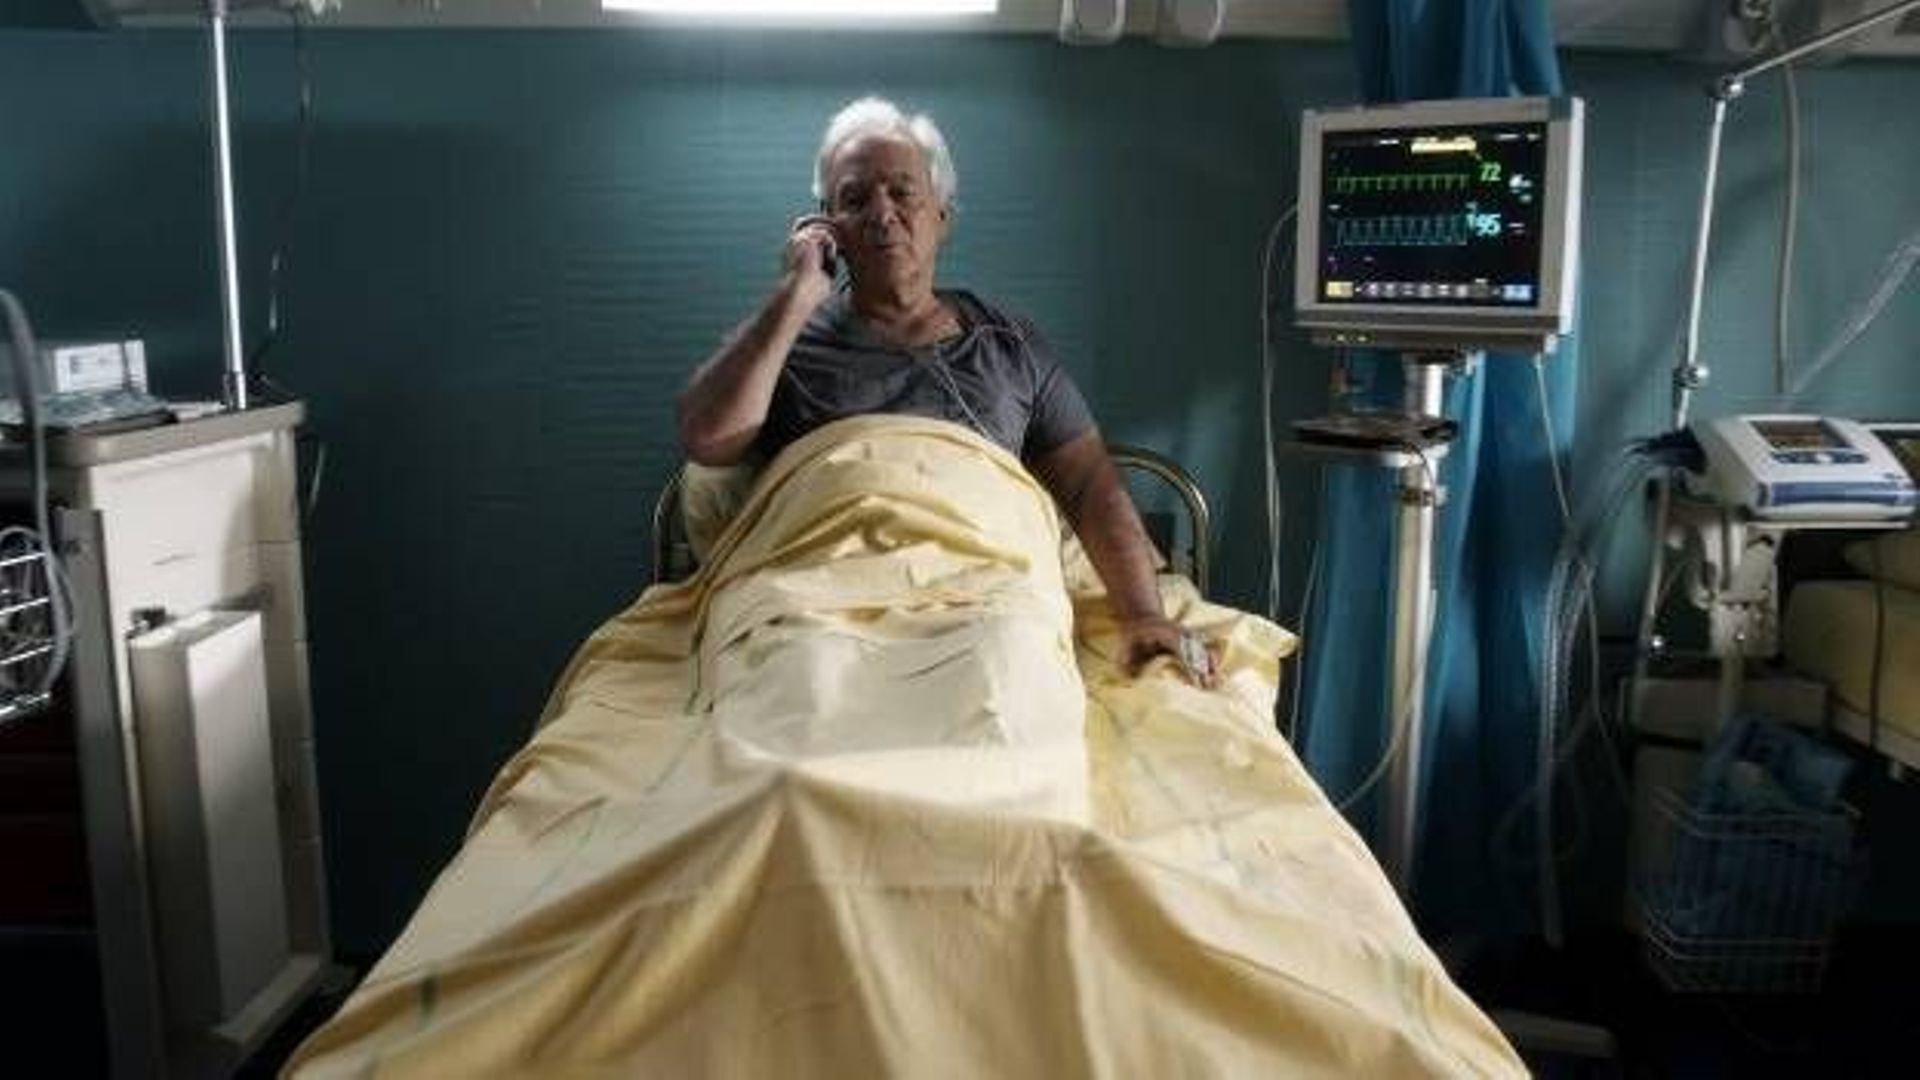 Pierre Arditi, célèbre chirurgien, se retrouve dans le lit d'hôpital